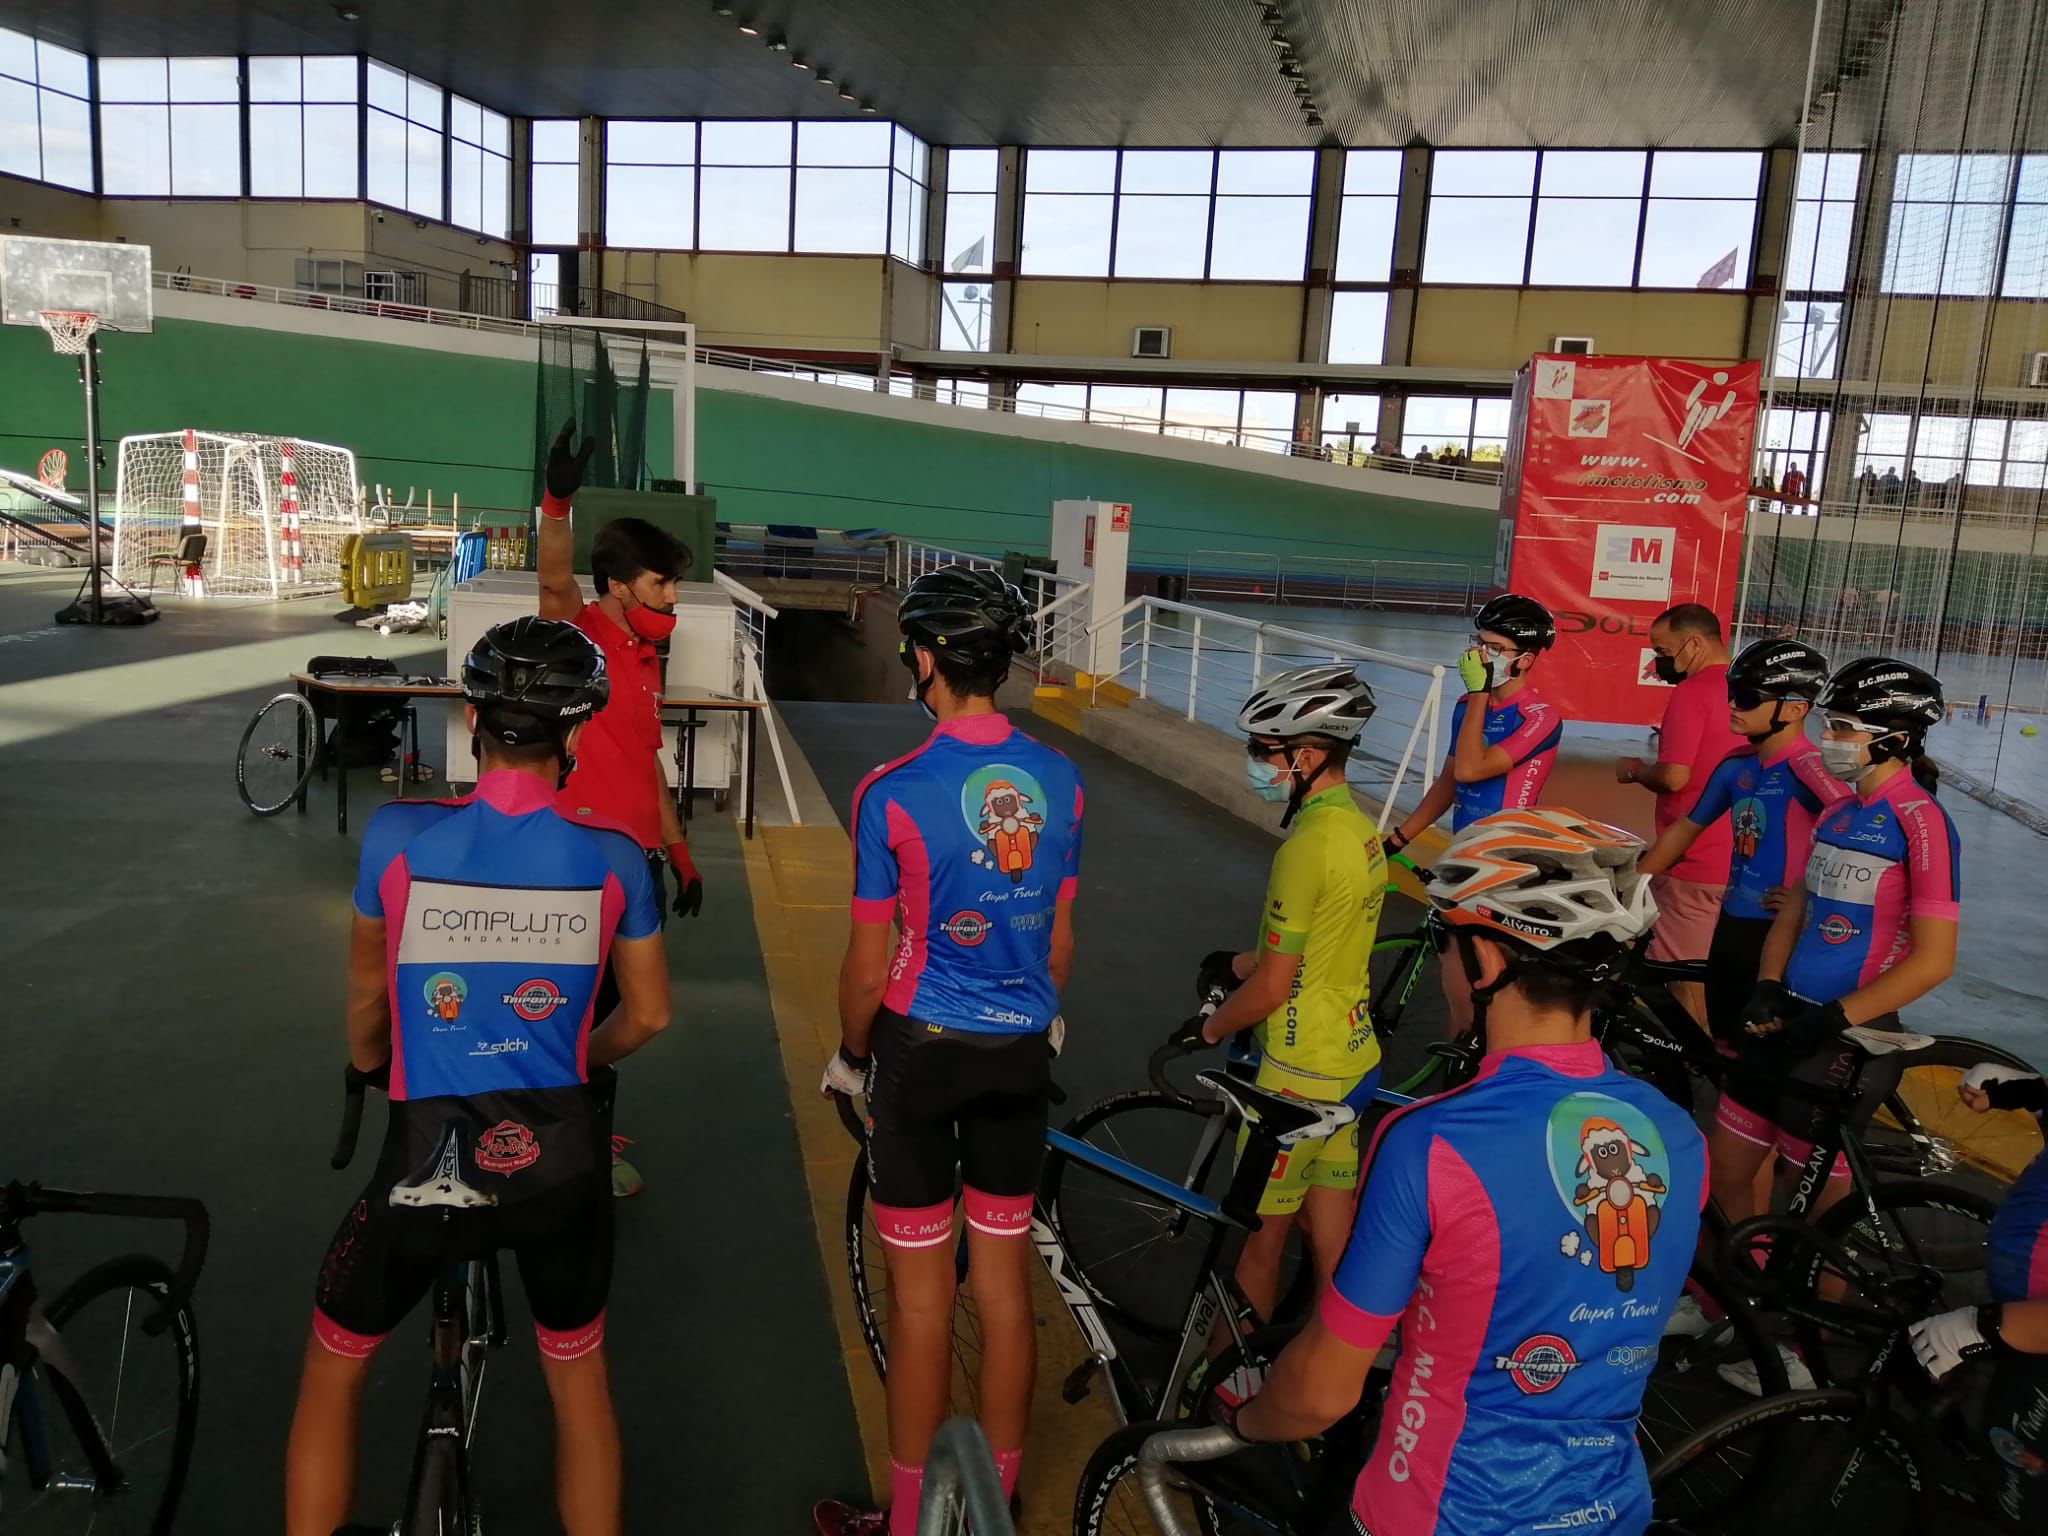 La Escuela Ciclista Rodríguez Magro acudió a Galapagar para probarse con el ciclismo en pista